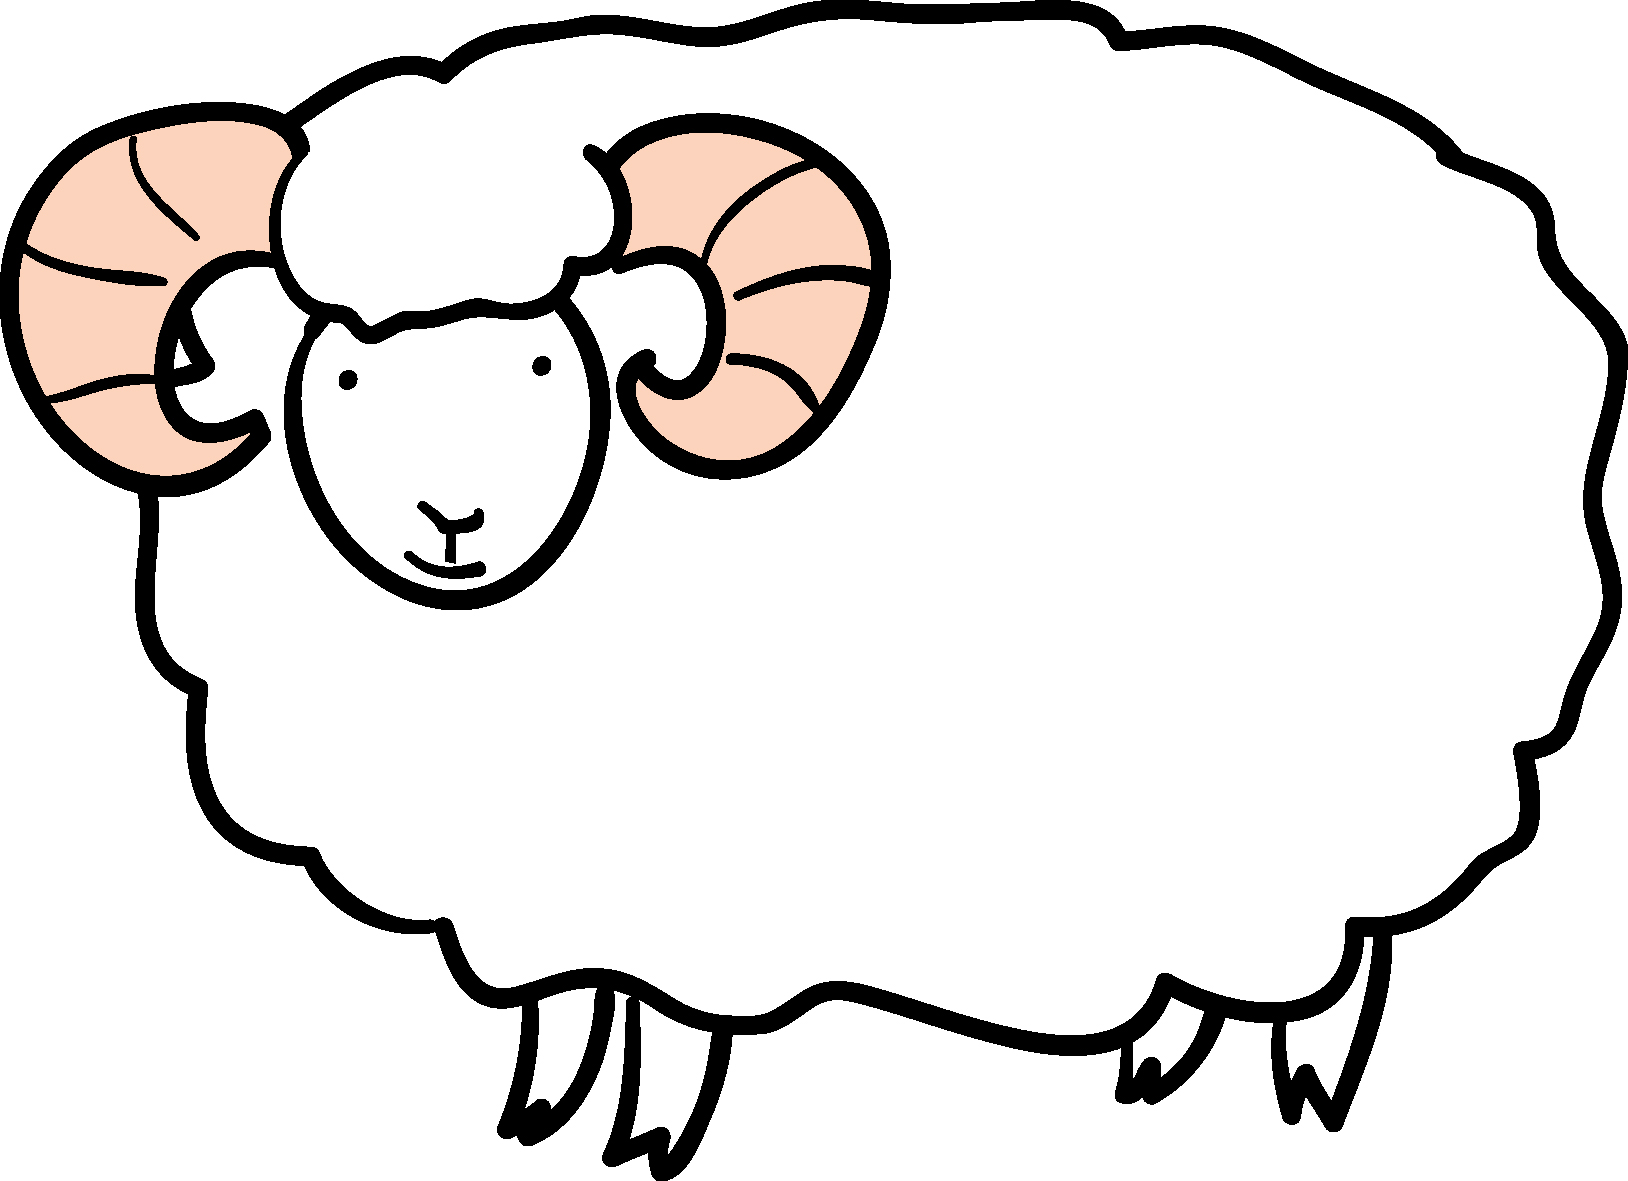 動物の印刷用イラスト素材 羊 ダウンロード